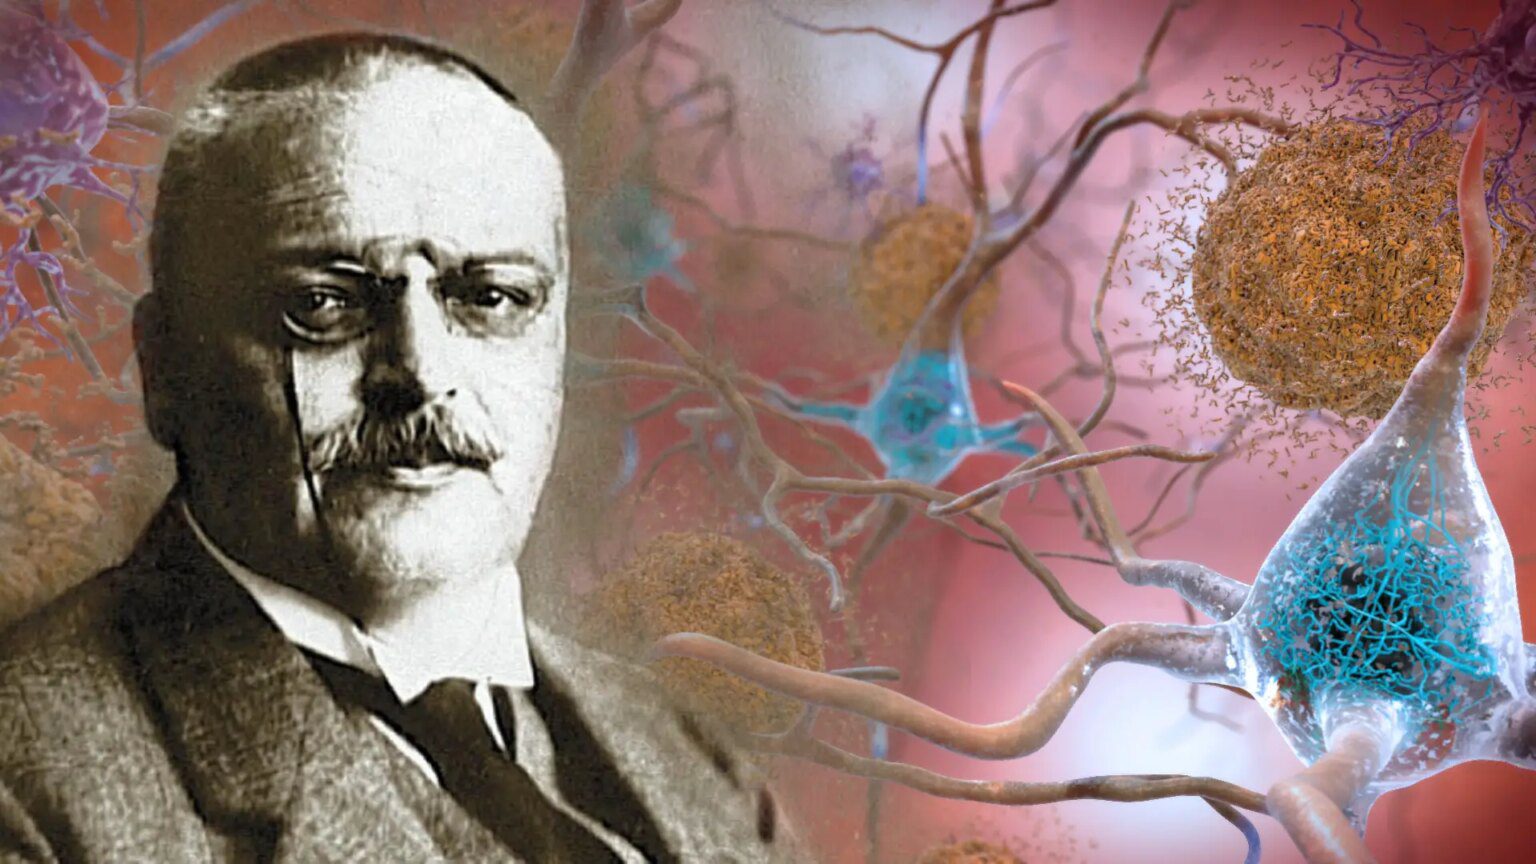 Alois Alzheimer: El hombre que descubrió la peor enfermedad neurodegenerativa en los ancianos -Revista Interesante